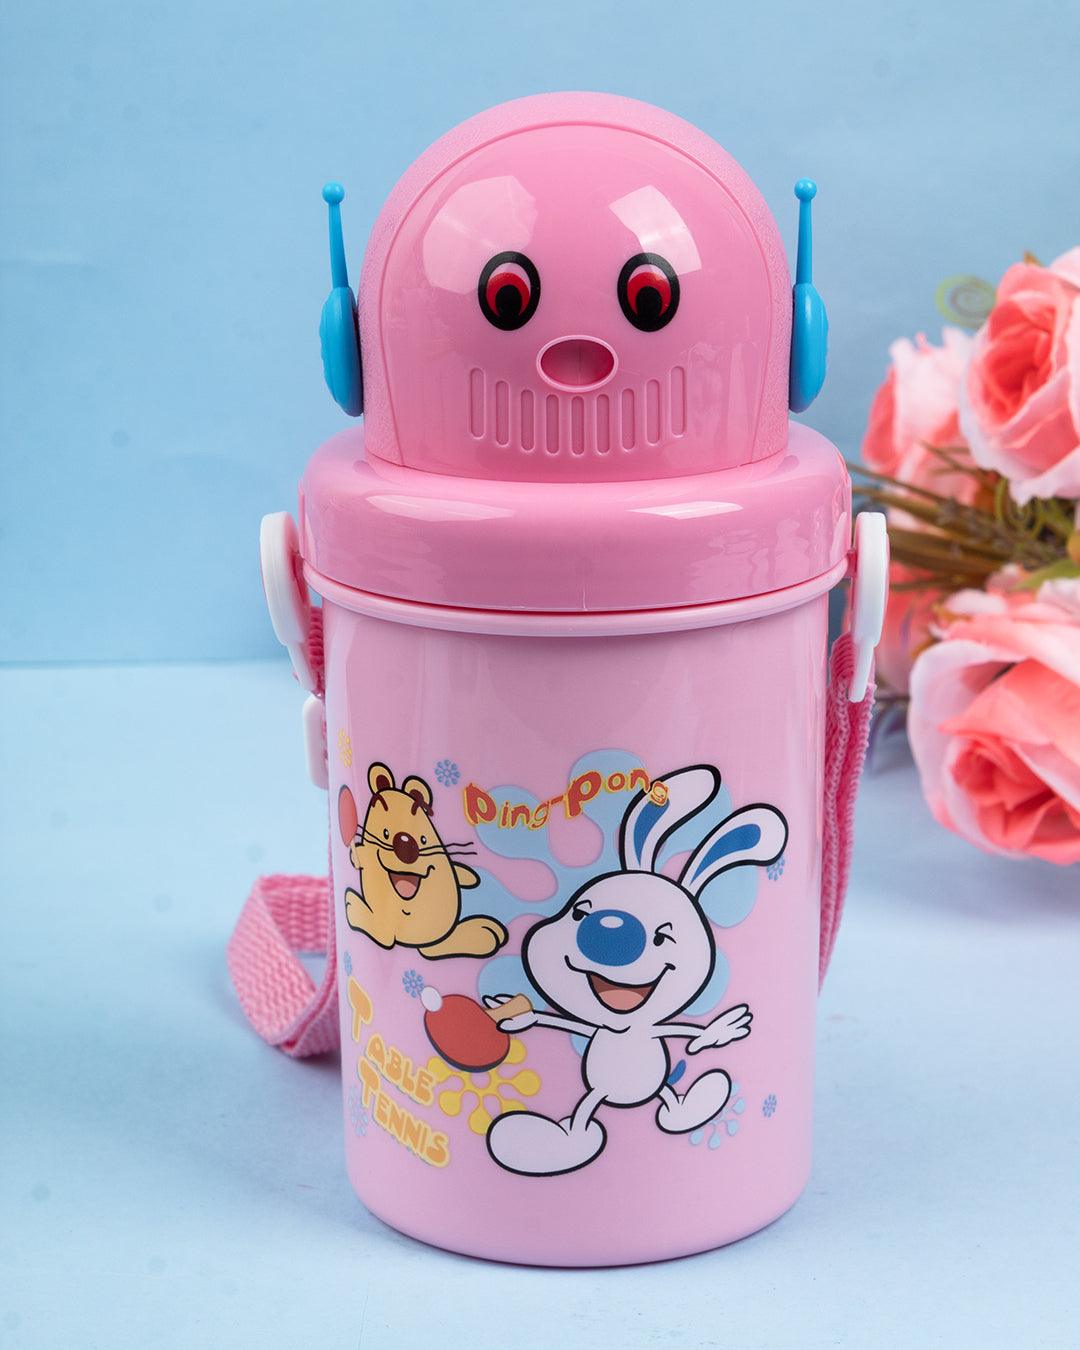 Kids Sipper Bottle, Pink, Plastic, 450 mL - MARKET 99